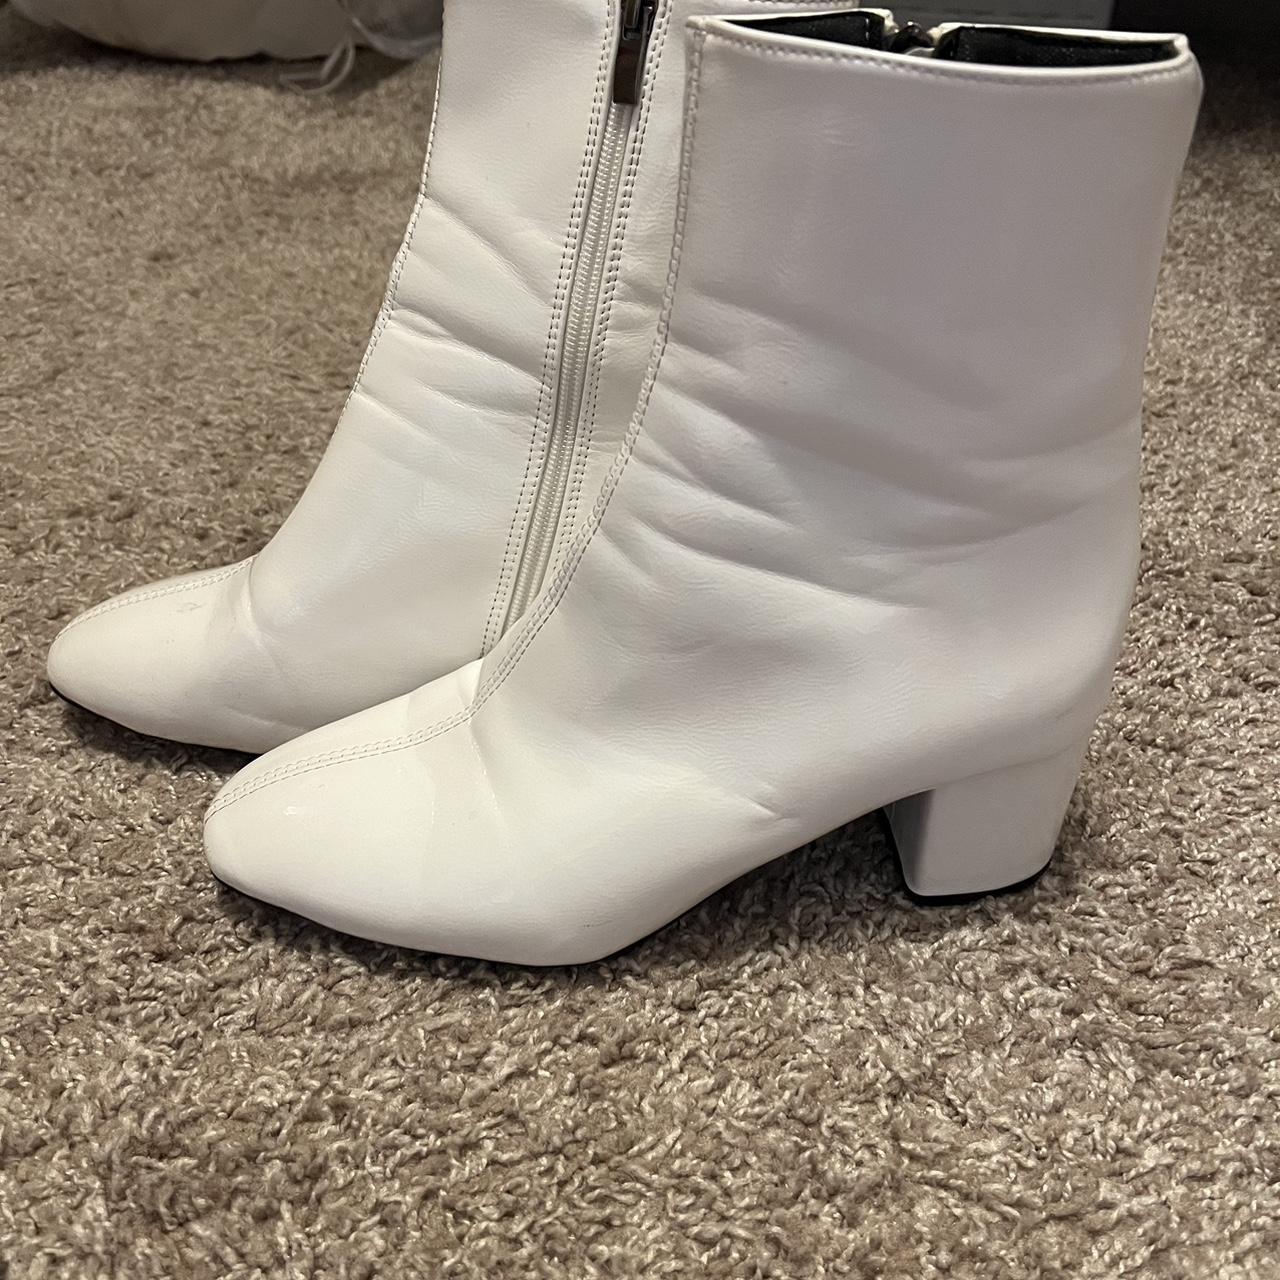 SHEIN Women's White Boots | Depop